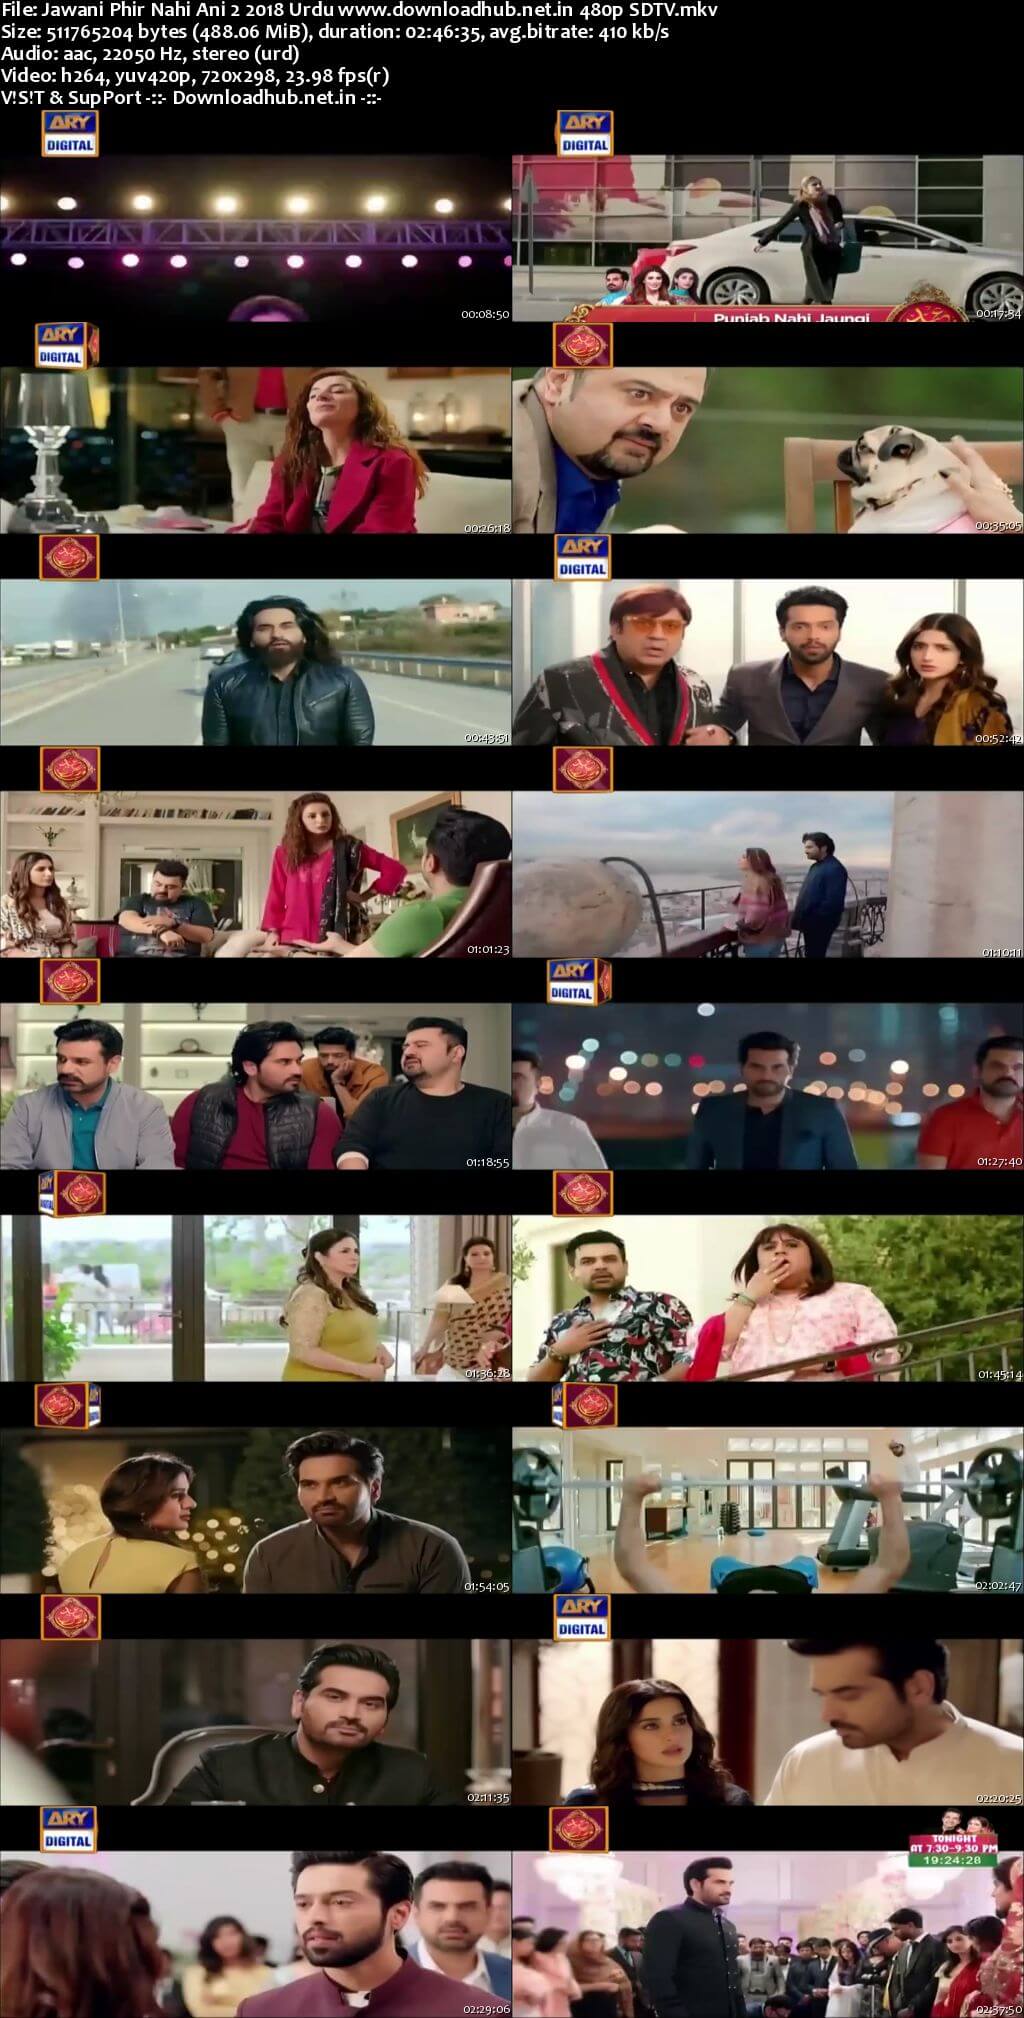 Jawani Phir Nahi Ani 2 2018 Urdu 450MB HDTV 480p